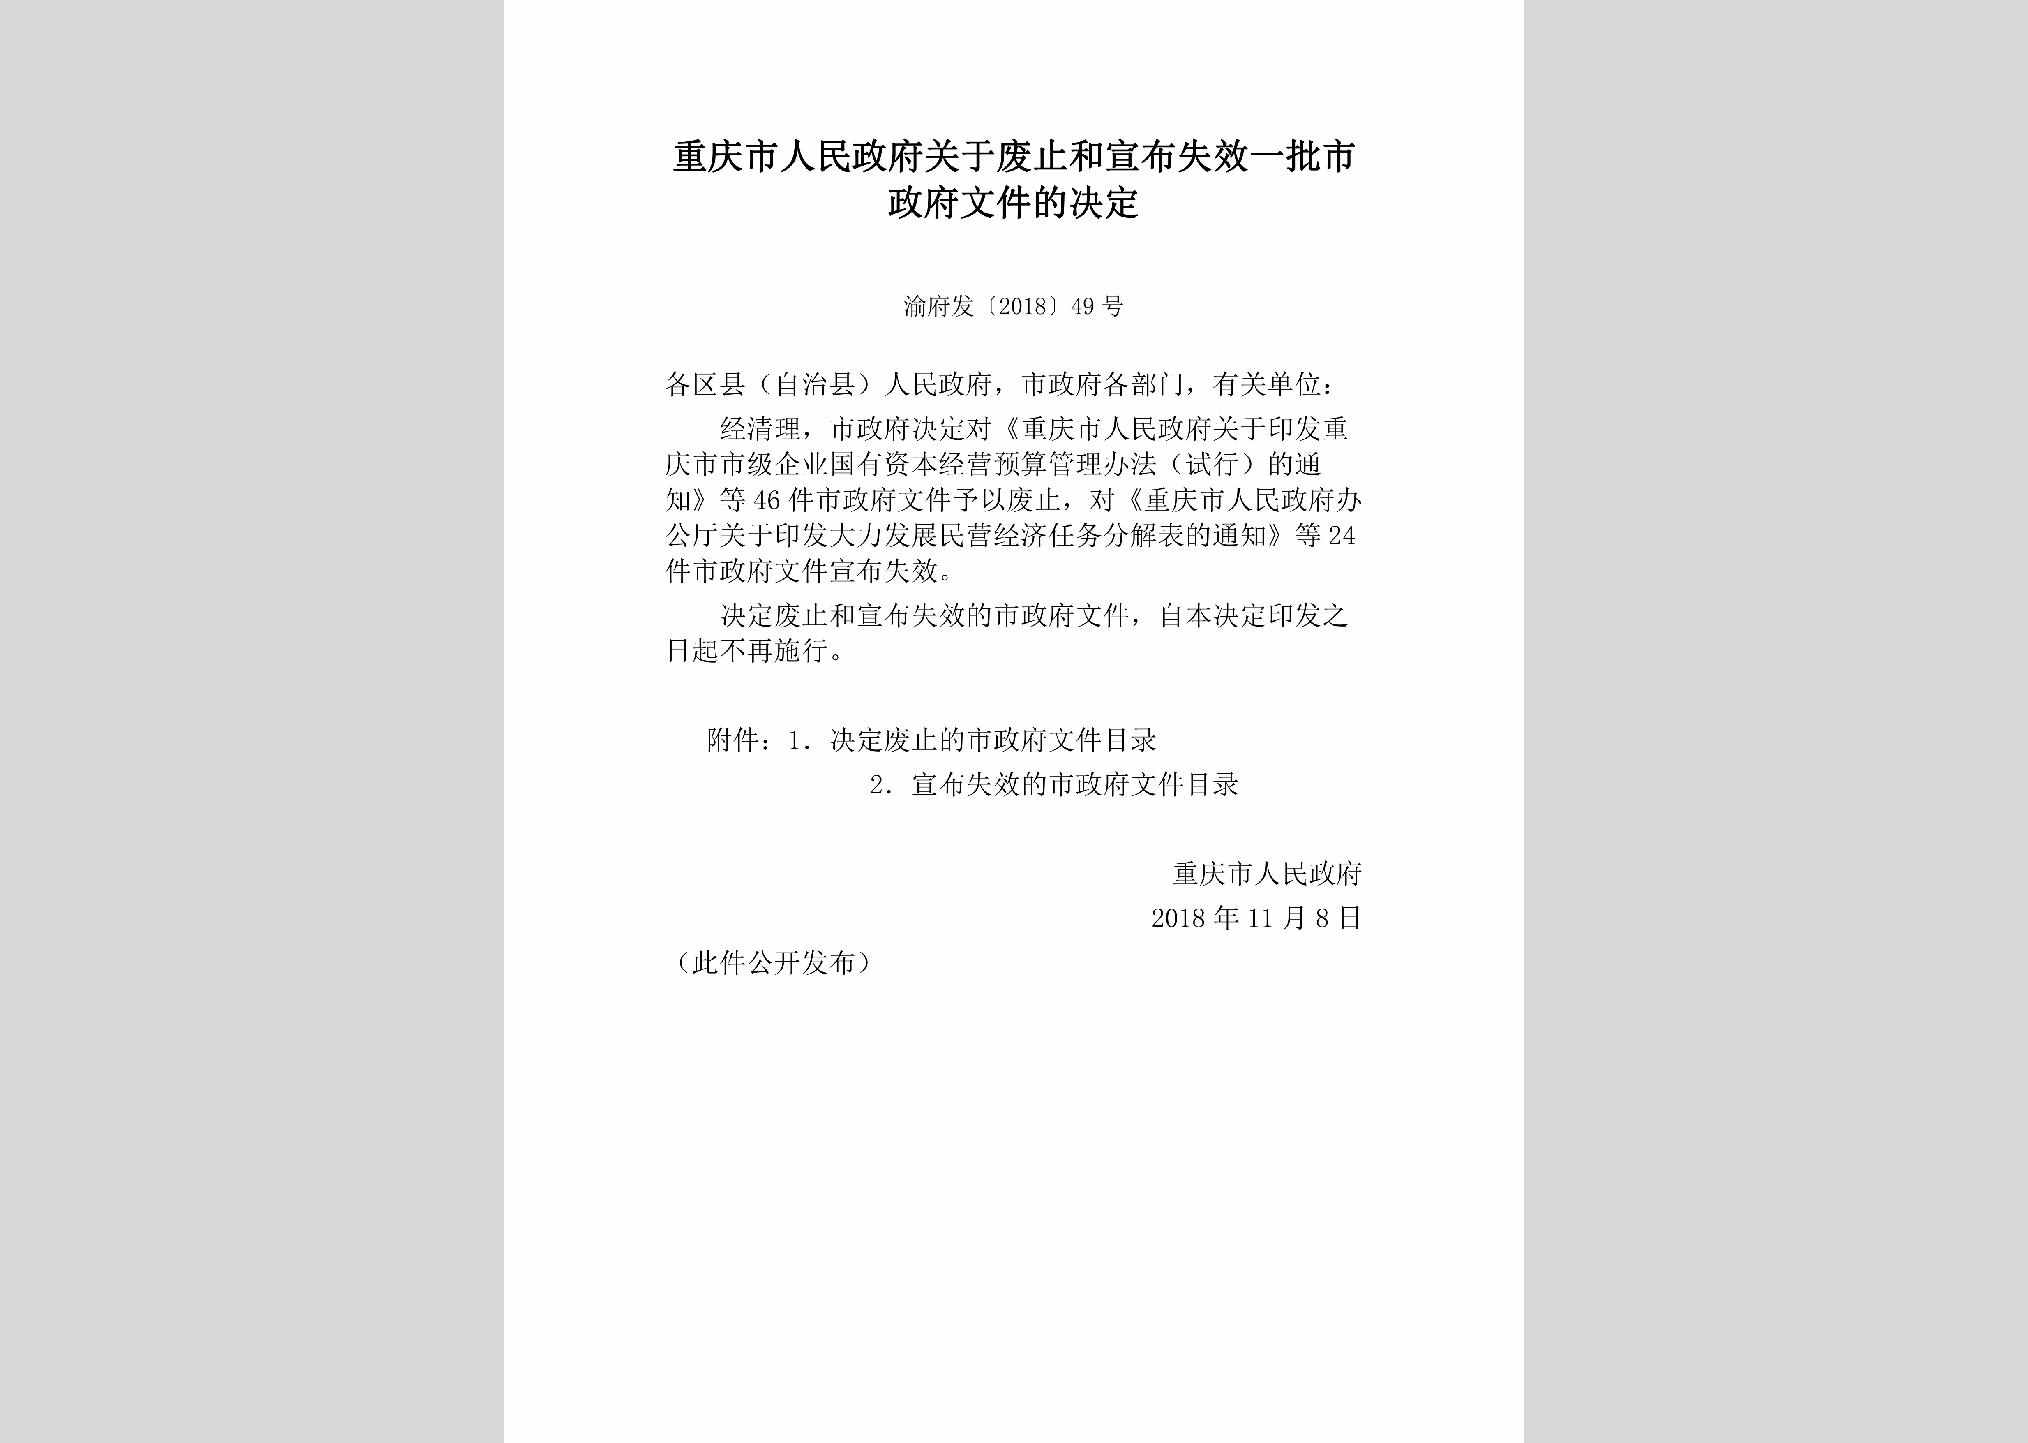 渝府发[2018]49号：重庆市人民政府关于废止和宣布失效一批市政府文件的决定